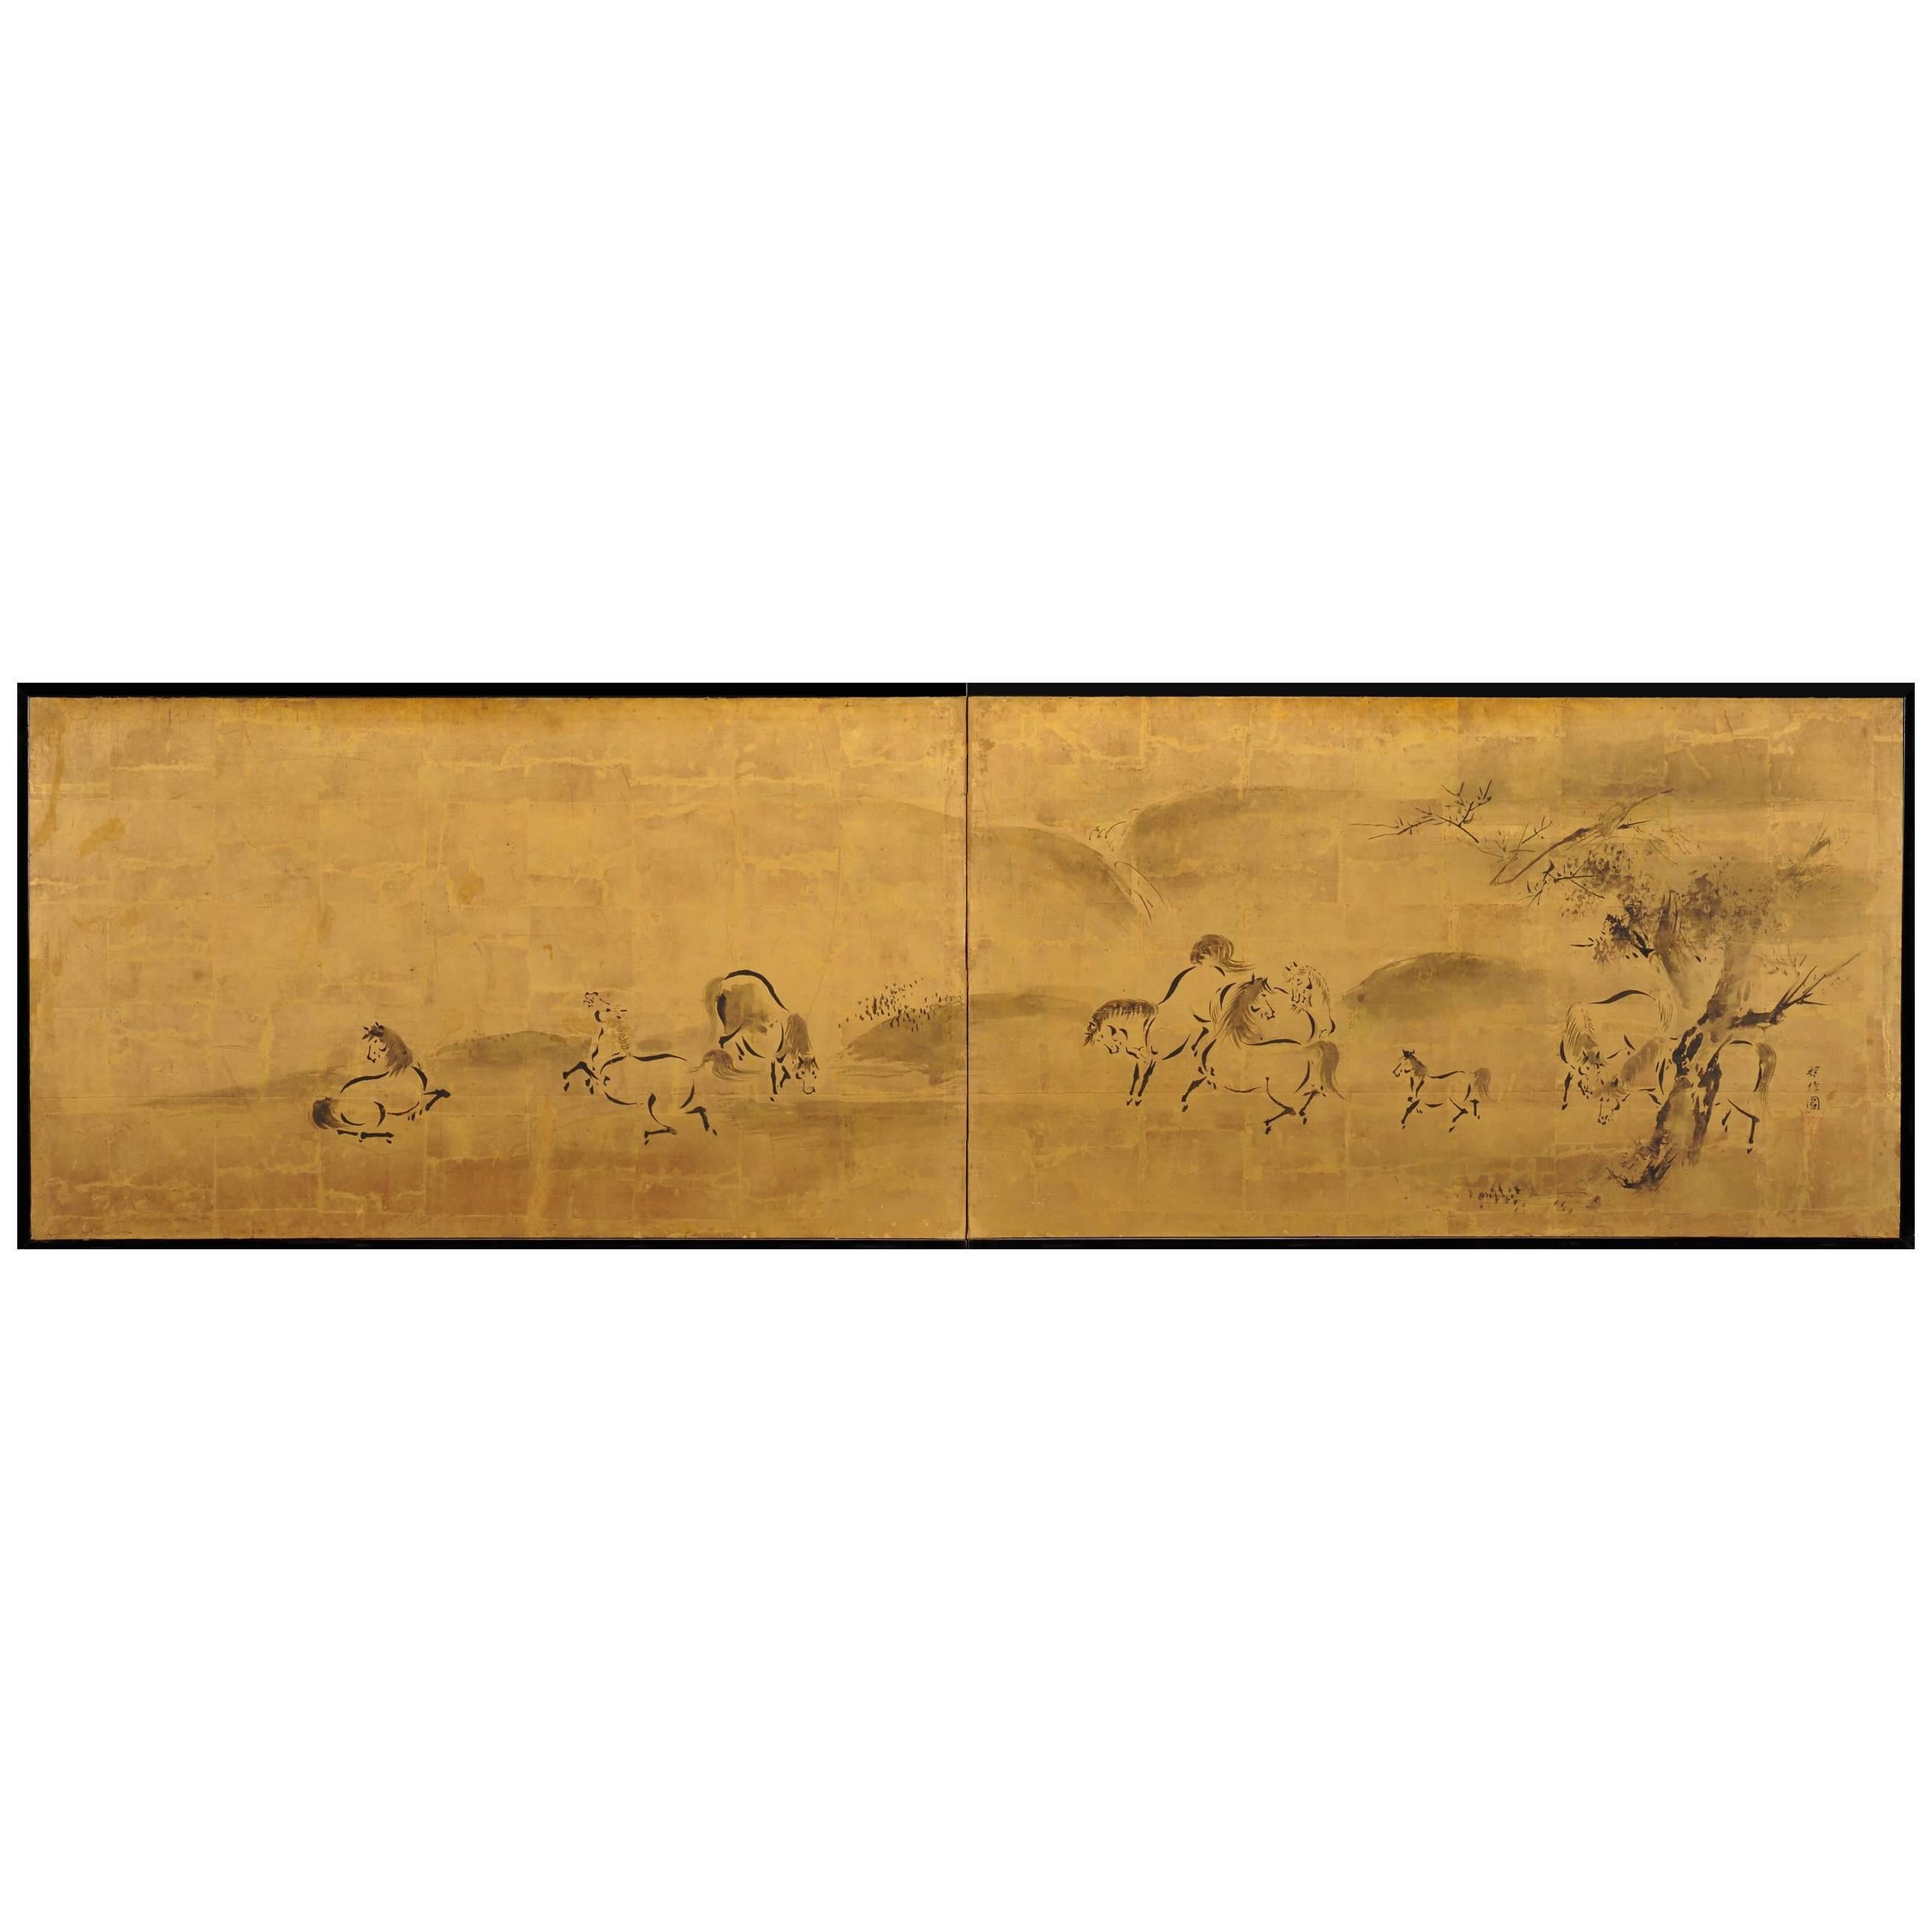 Japanese Screen Painting, Circa 1700 'Horses' by Kano Tanshin